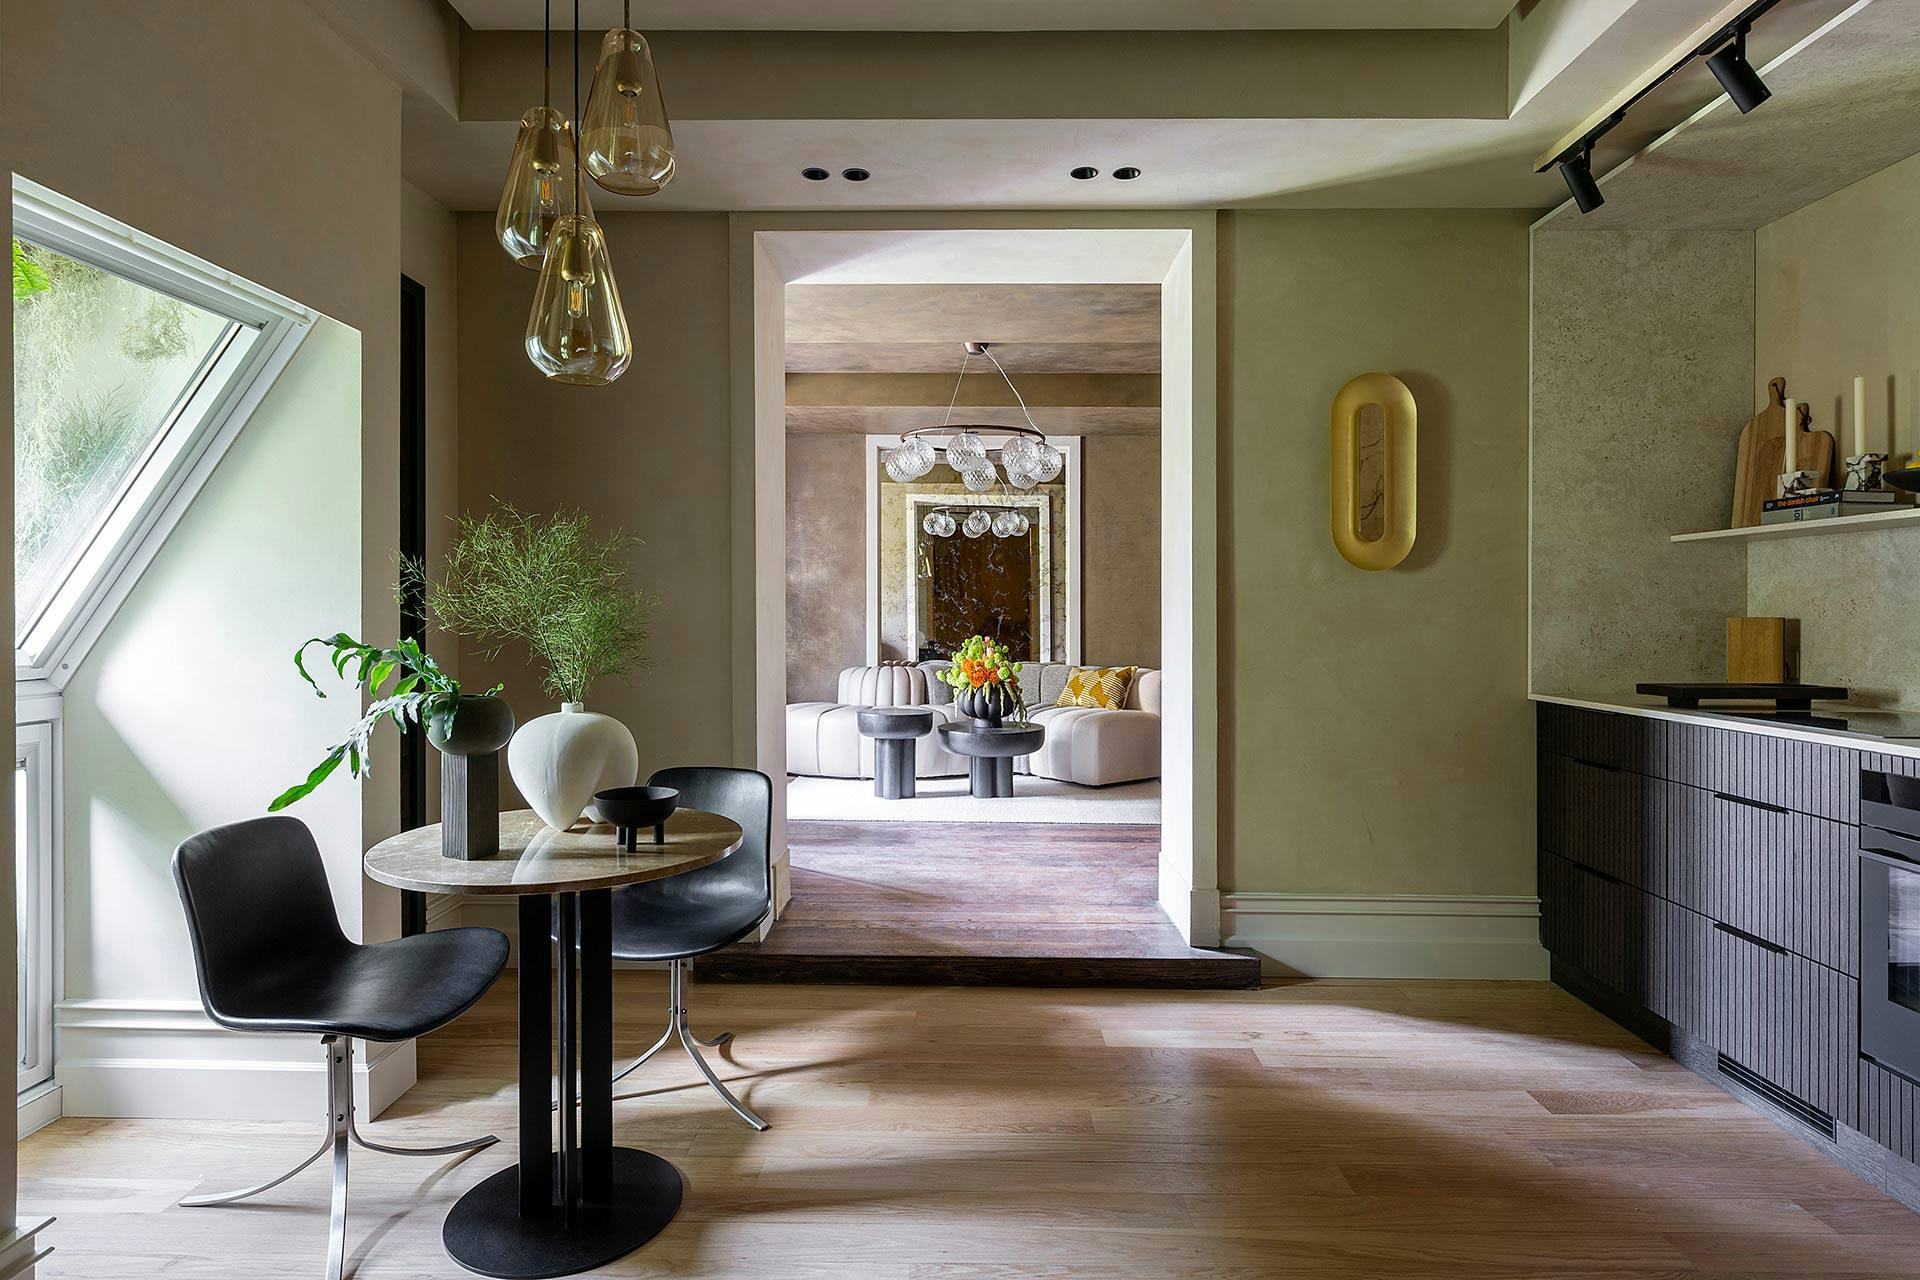 Image of casa decor 2023 salon cocina danish design comad 04.jpg?auto=format%2Ccompress&ixlib=php 3.3 in AEC Illuminazione - Cosentino